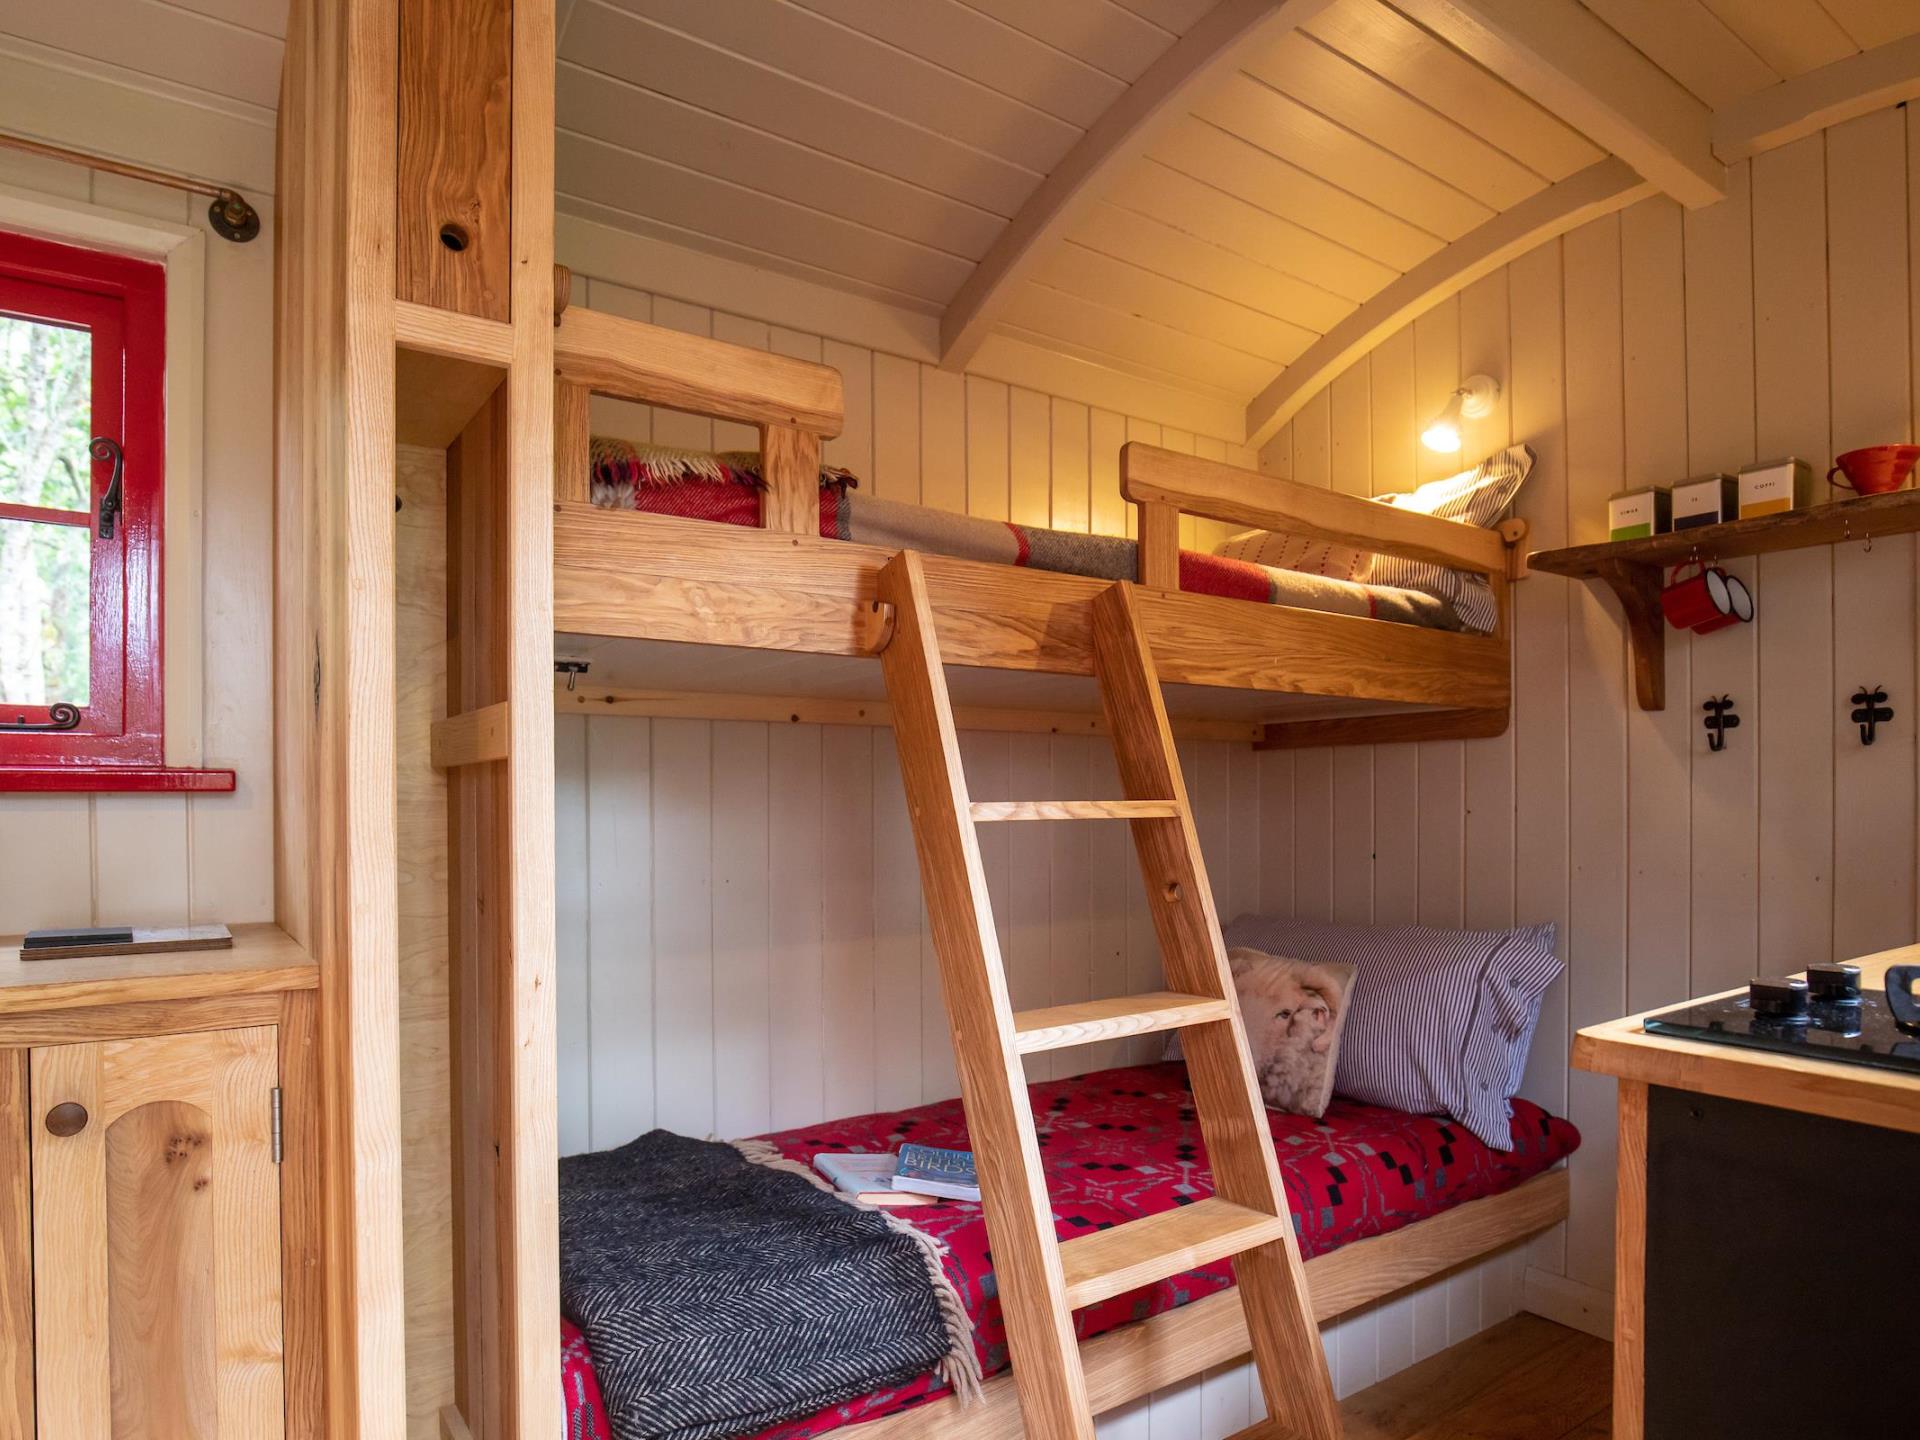 Optional bunk beds